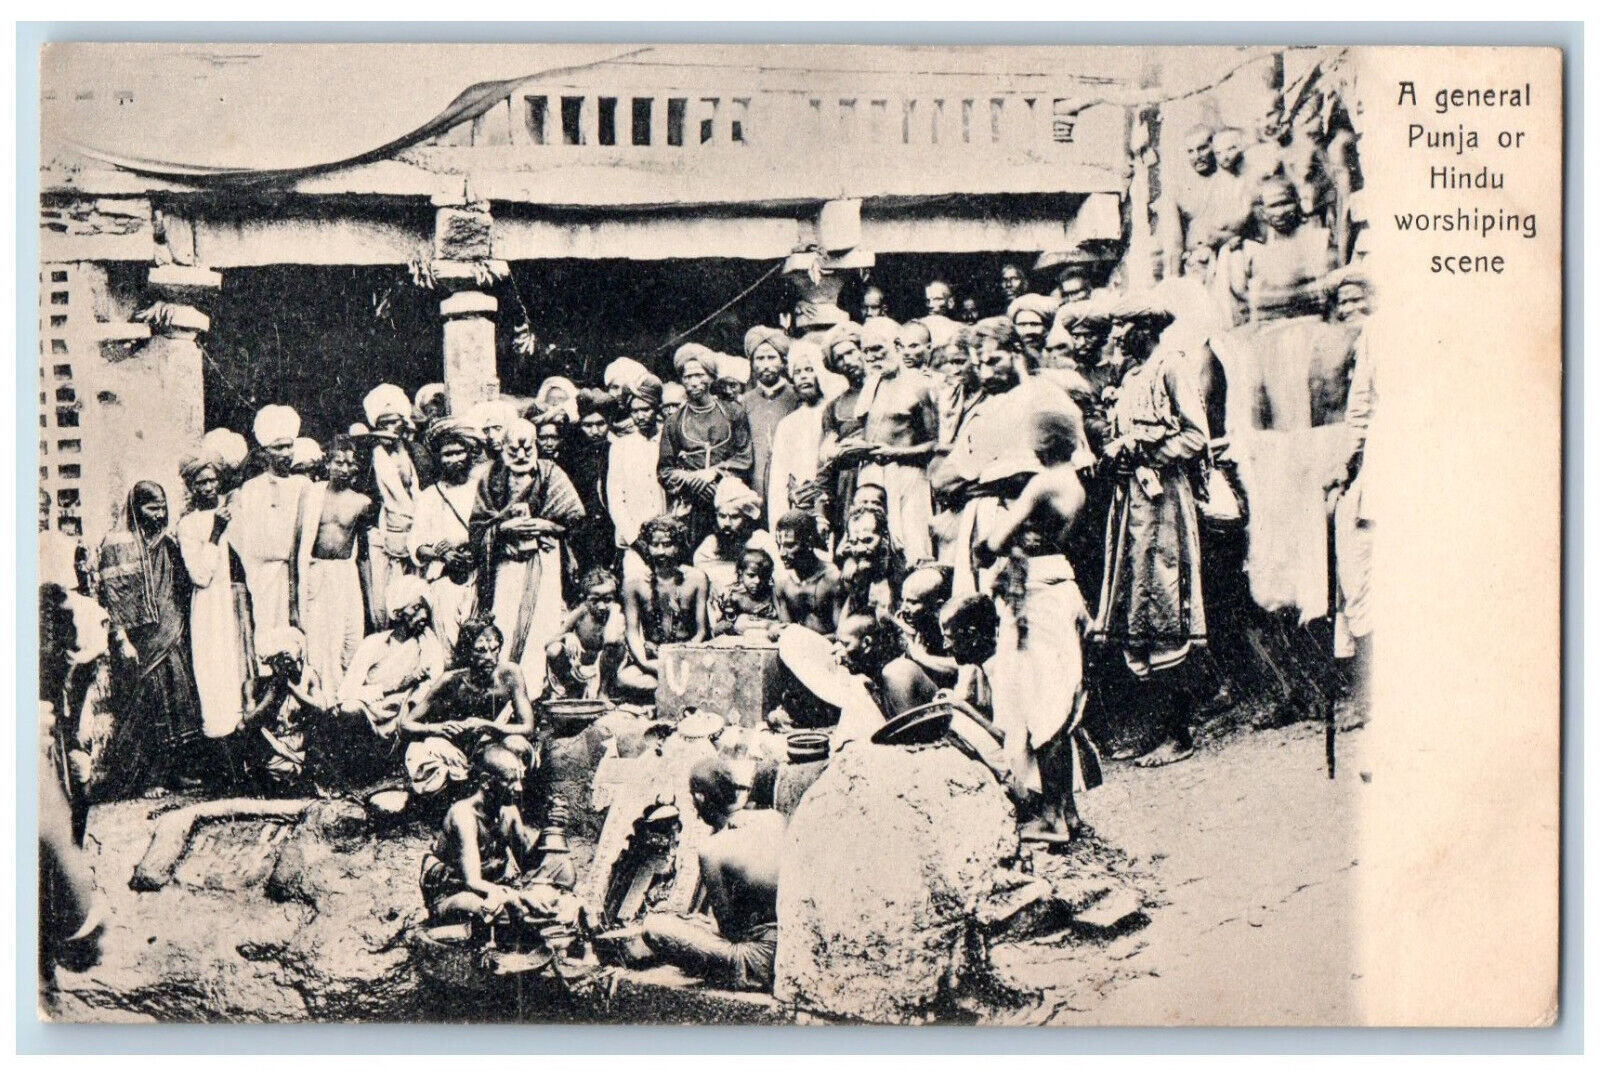 India Postcard A General Punja or Hindu Worshipping Sccene c1940's Vintage